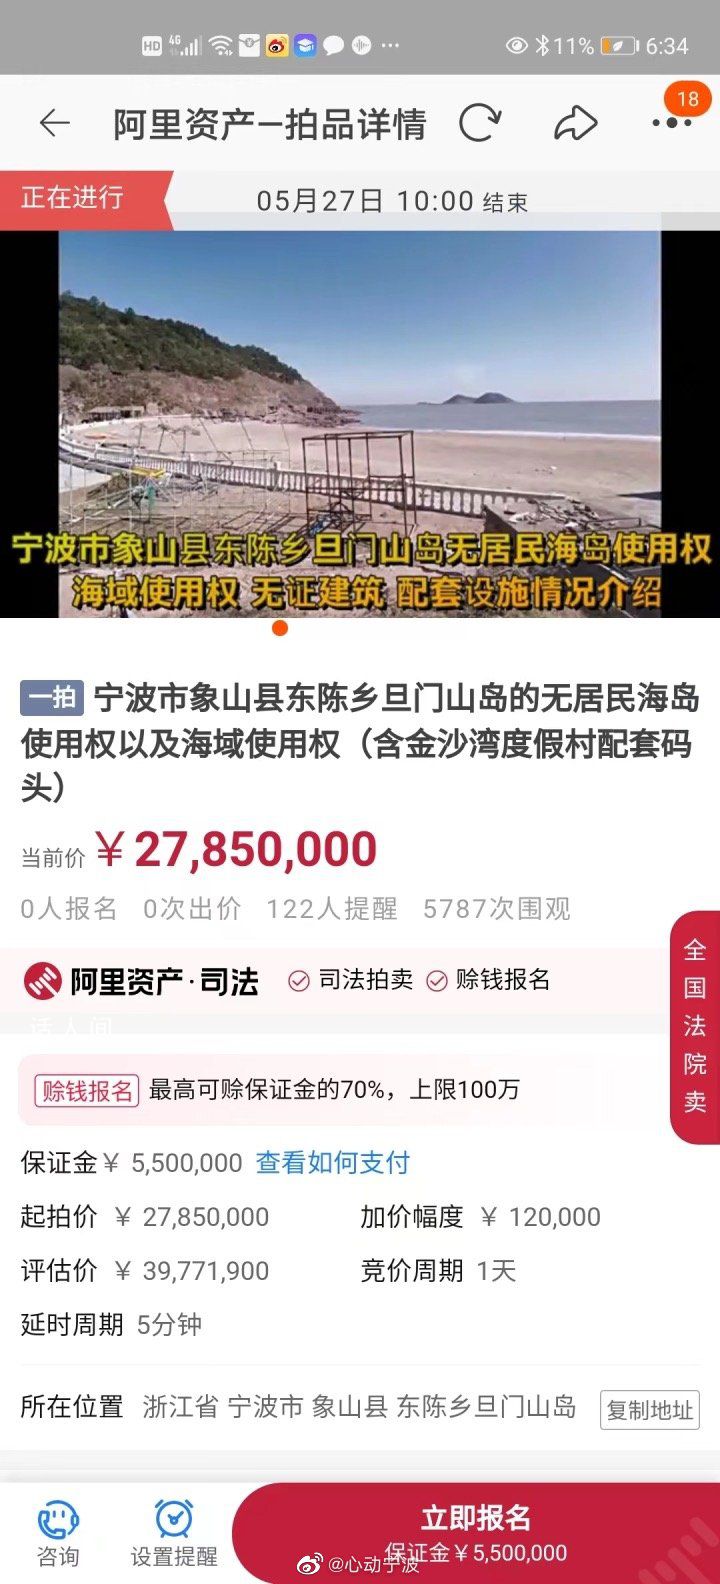 浙江一无人岛挂牌拍卖 起拍价2785万元